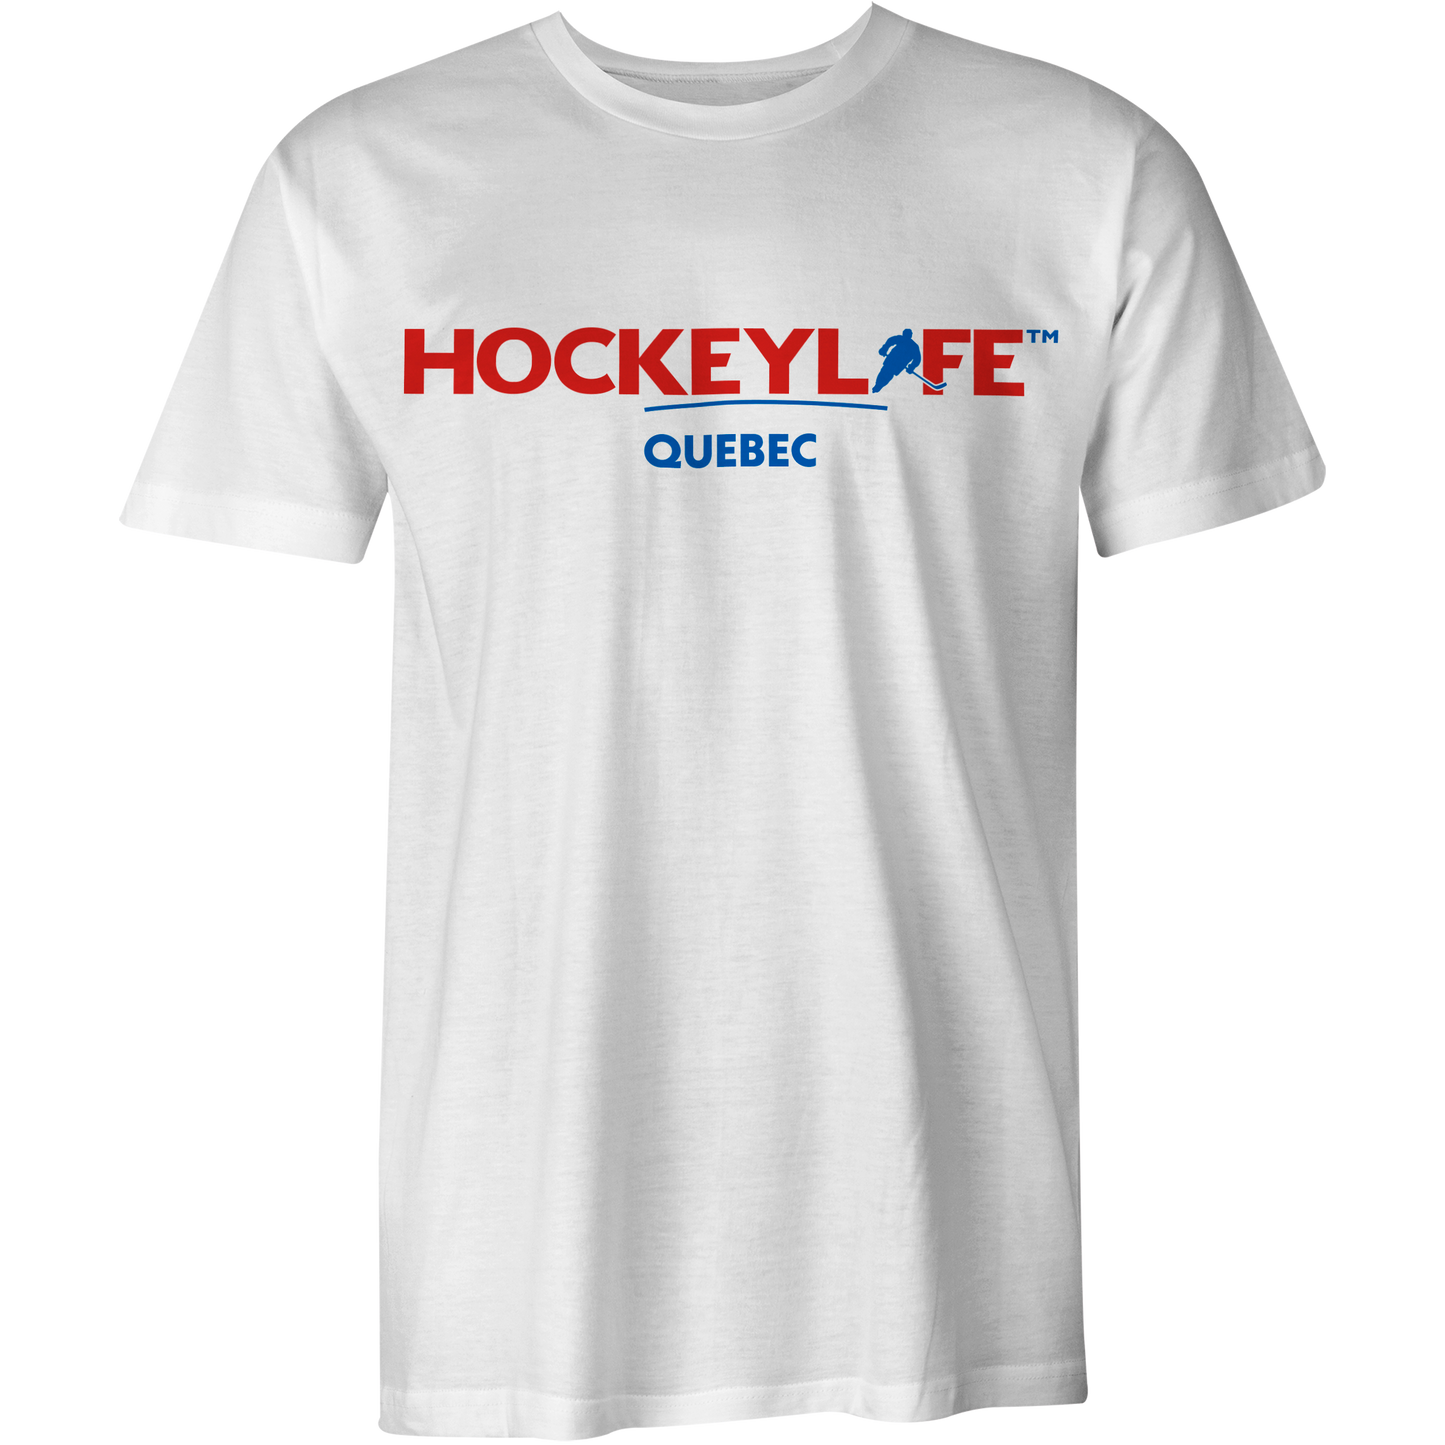 HockeyLife Quebec Tee Shirt